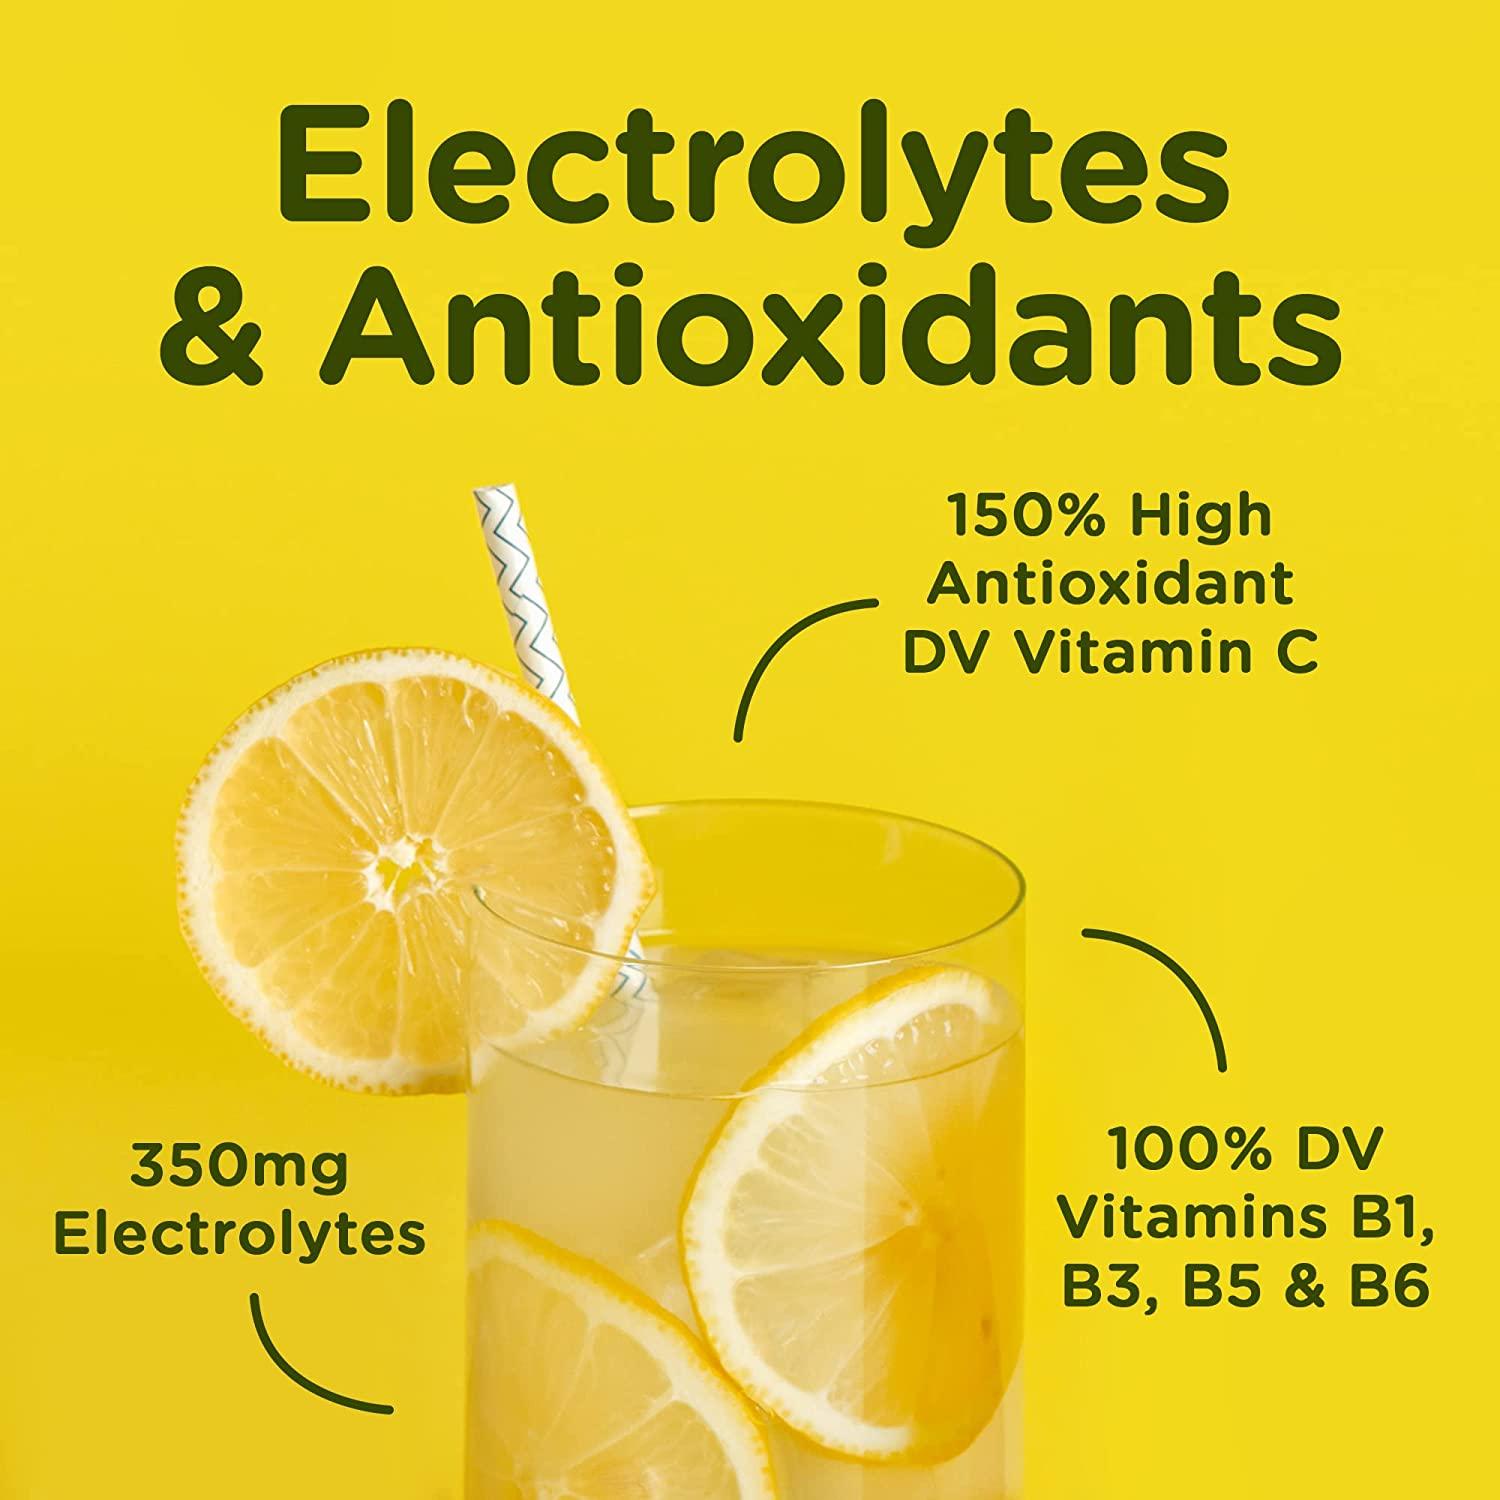 Stur Electrolyte Hydration Powder, Lemonade, Sugar Free